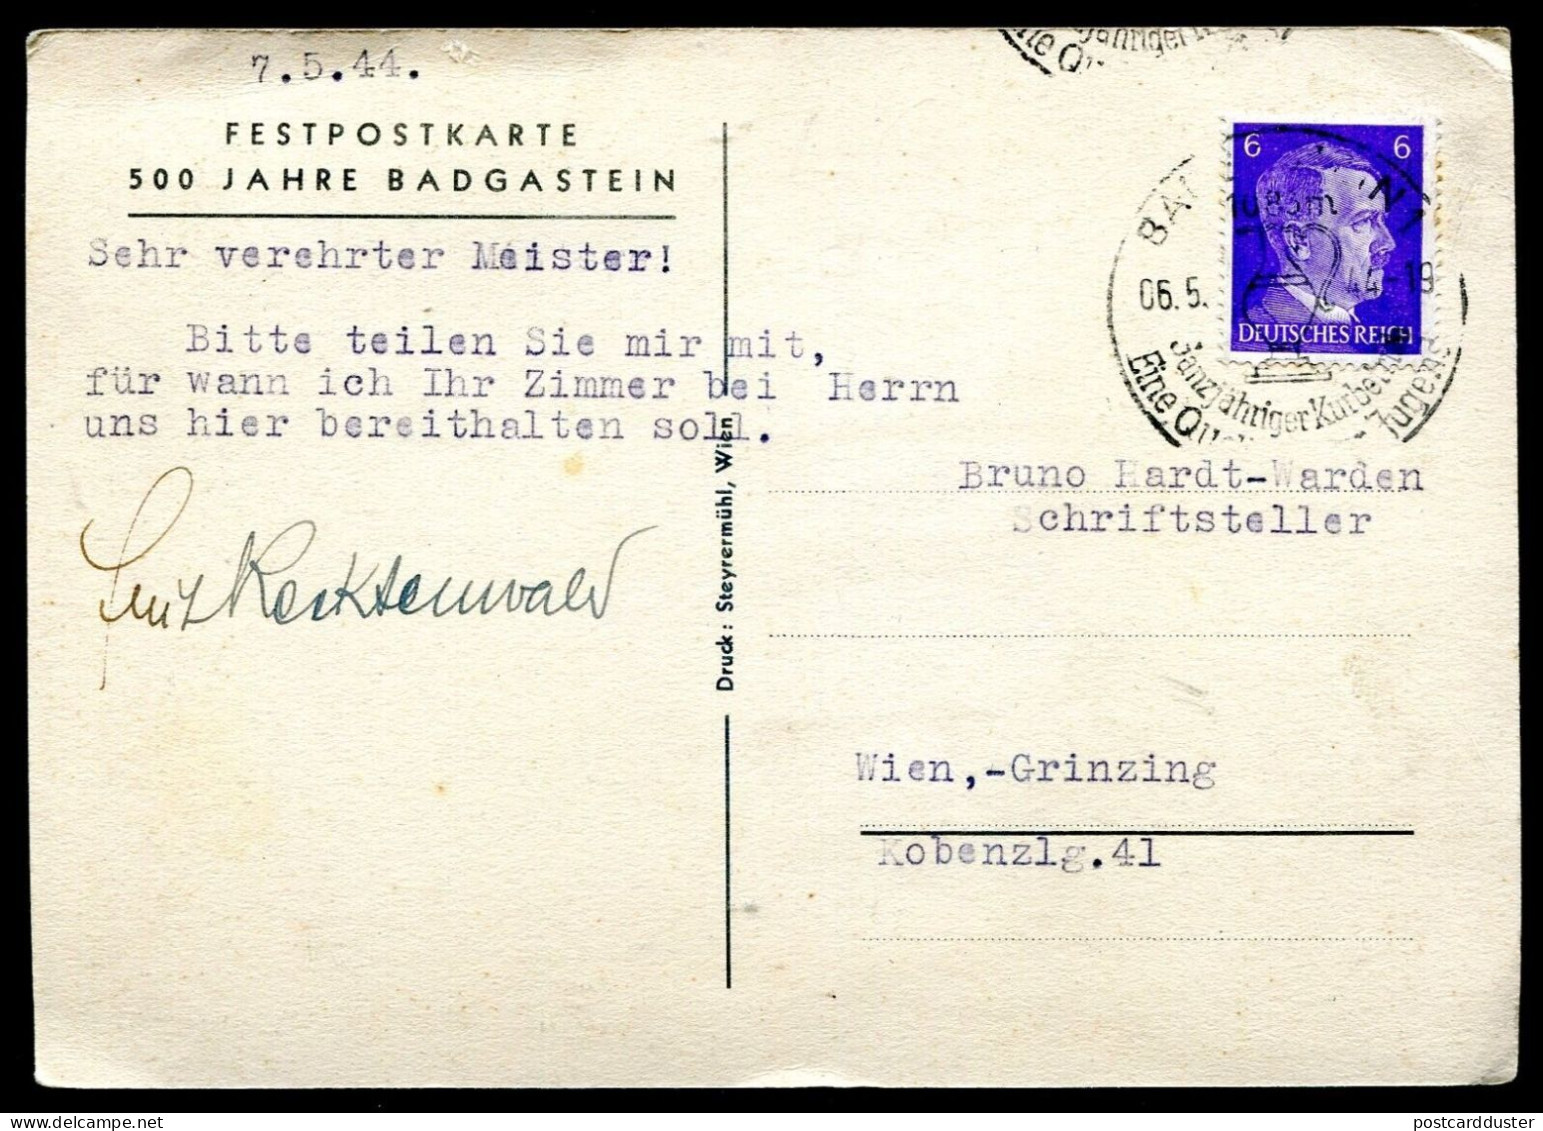 AUSTRIA Bad Gastein Postcard 1944 Artist LENHART Poster Type 500 Year Jubilee (p1033) - Bad Gastein